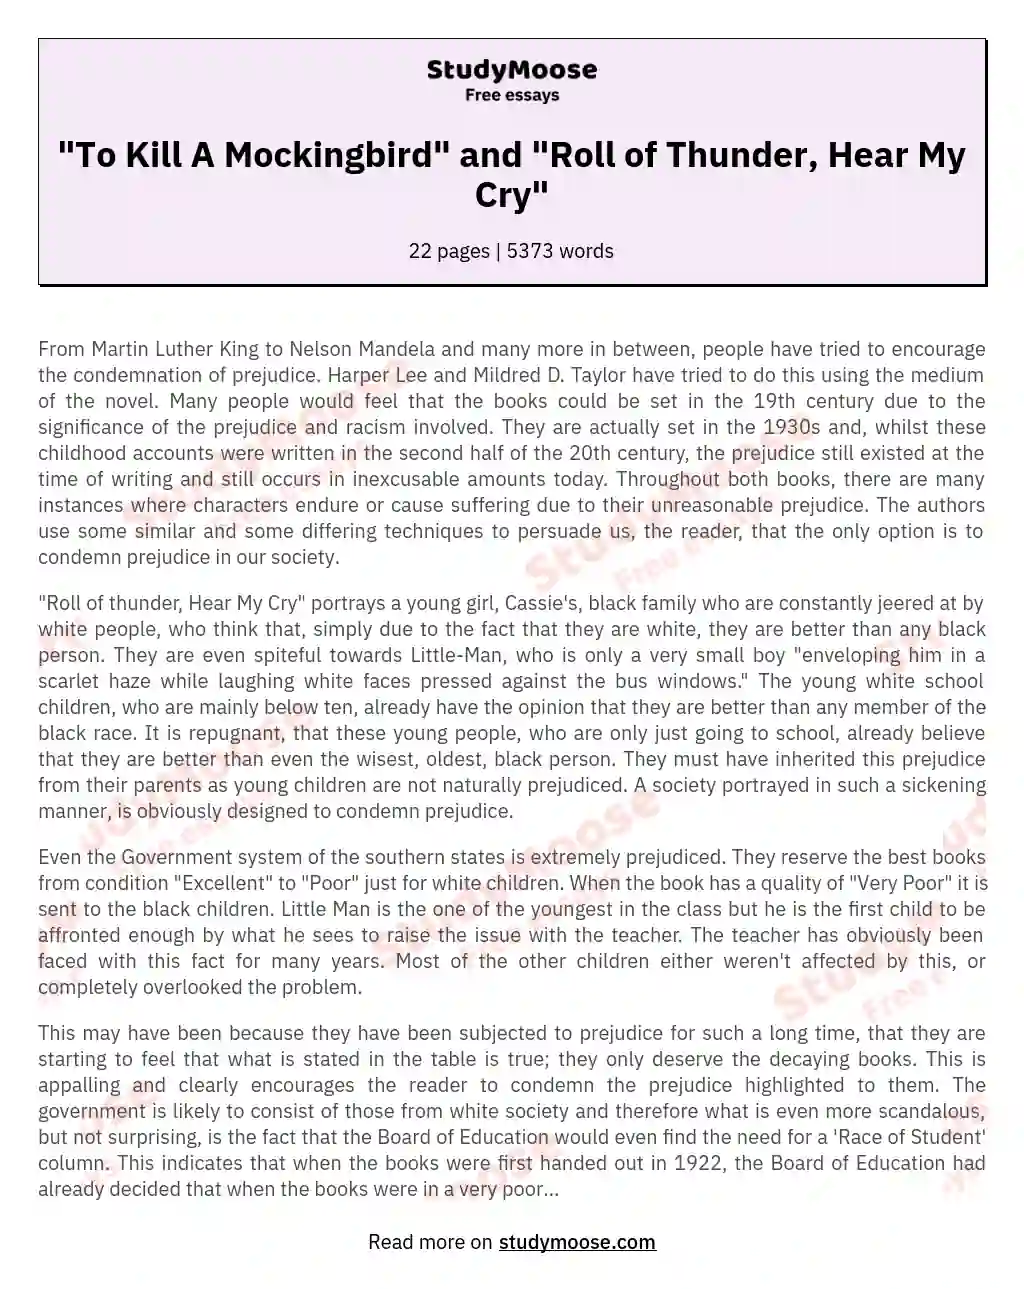 "To Kill A Mockingbird" and "Roll of Thunder, Hear My Cry"